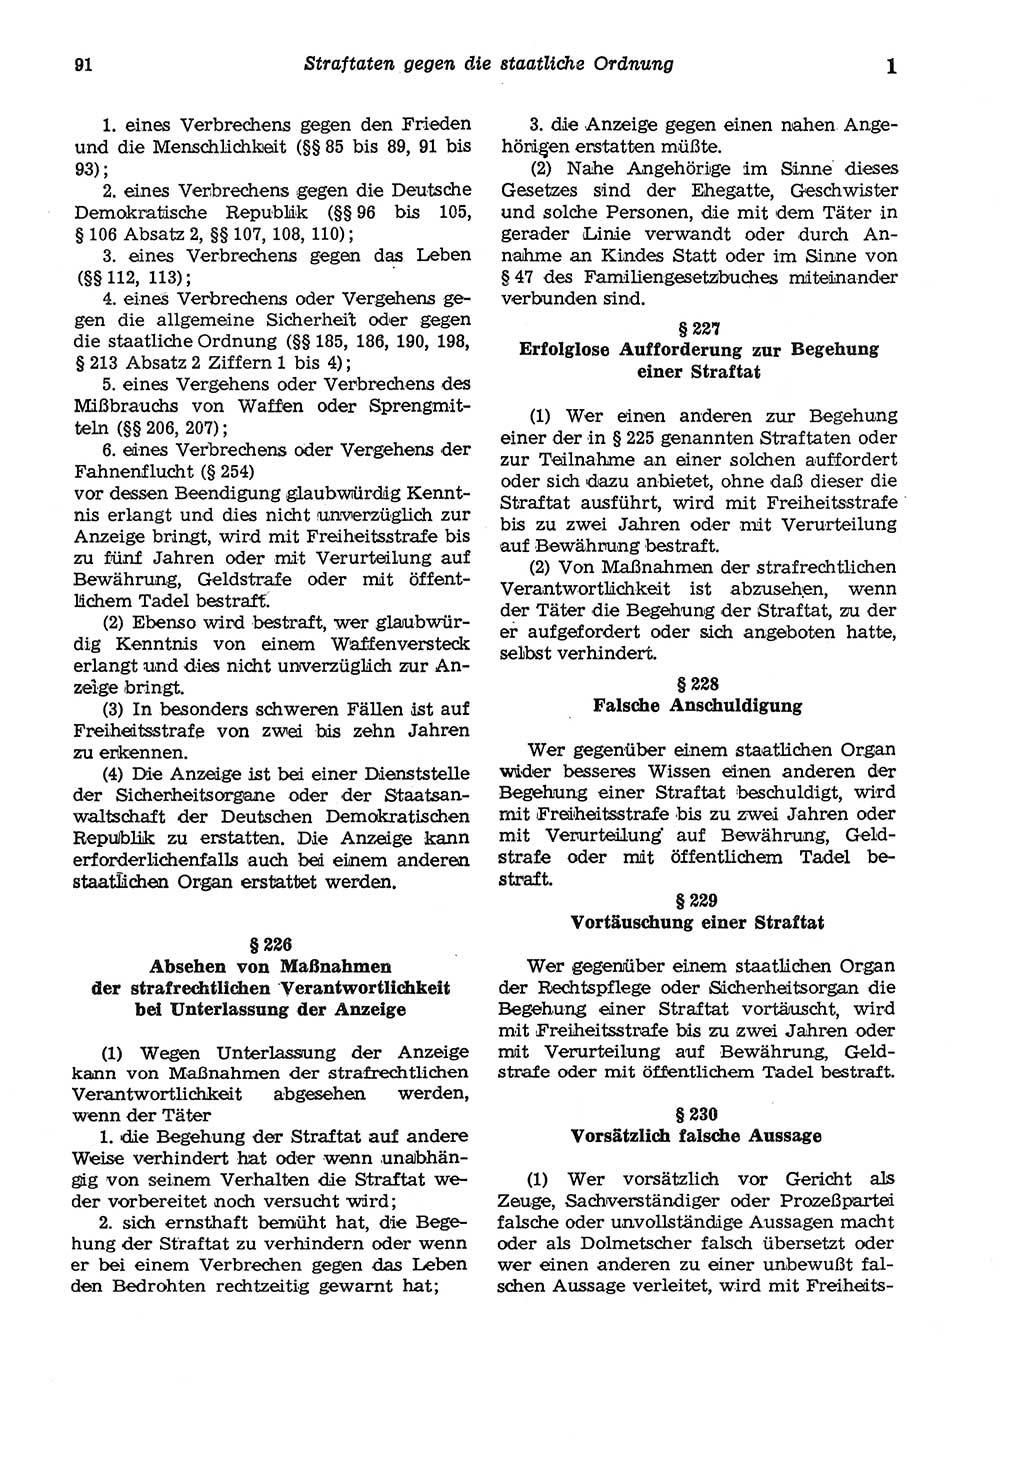 Strafgesetzbuch (StGB) der Deutschen Demokratischen Republik (DDR) und angrenzende Gesetze und Bestimmungen 1975, Seite 91 (StGB DDR Ges. Best. 1975, S. 91)